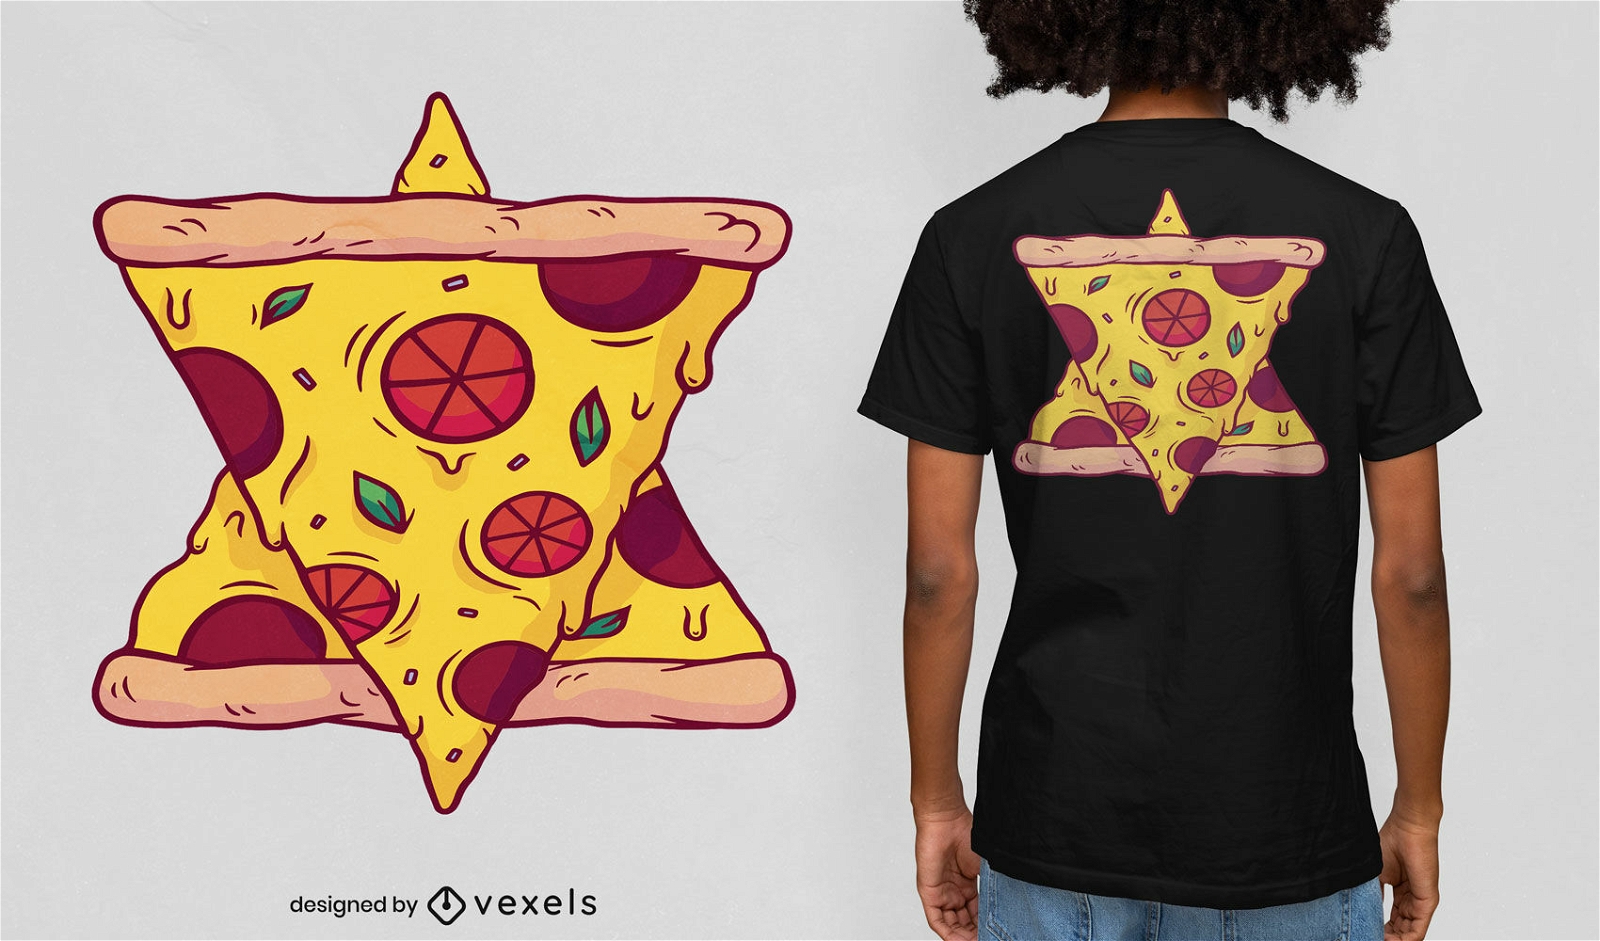 Dise?o de camiseta de estrella de pizza de seis puntas.